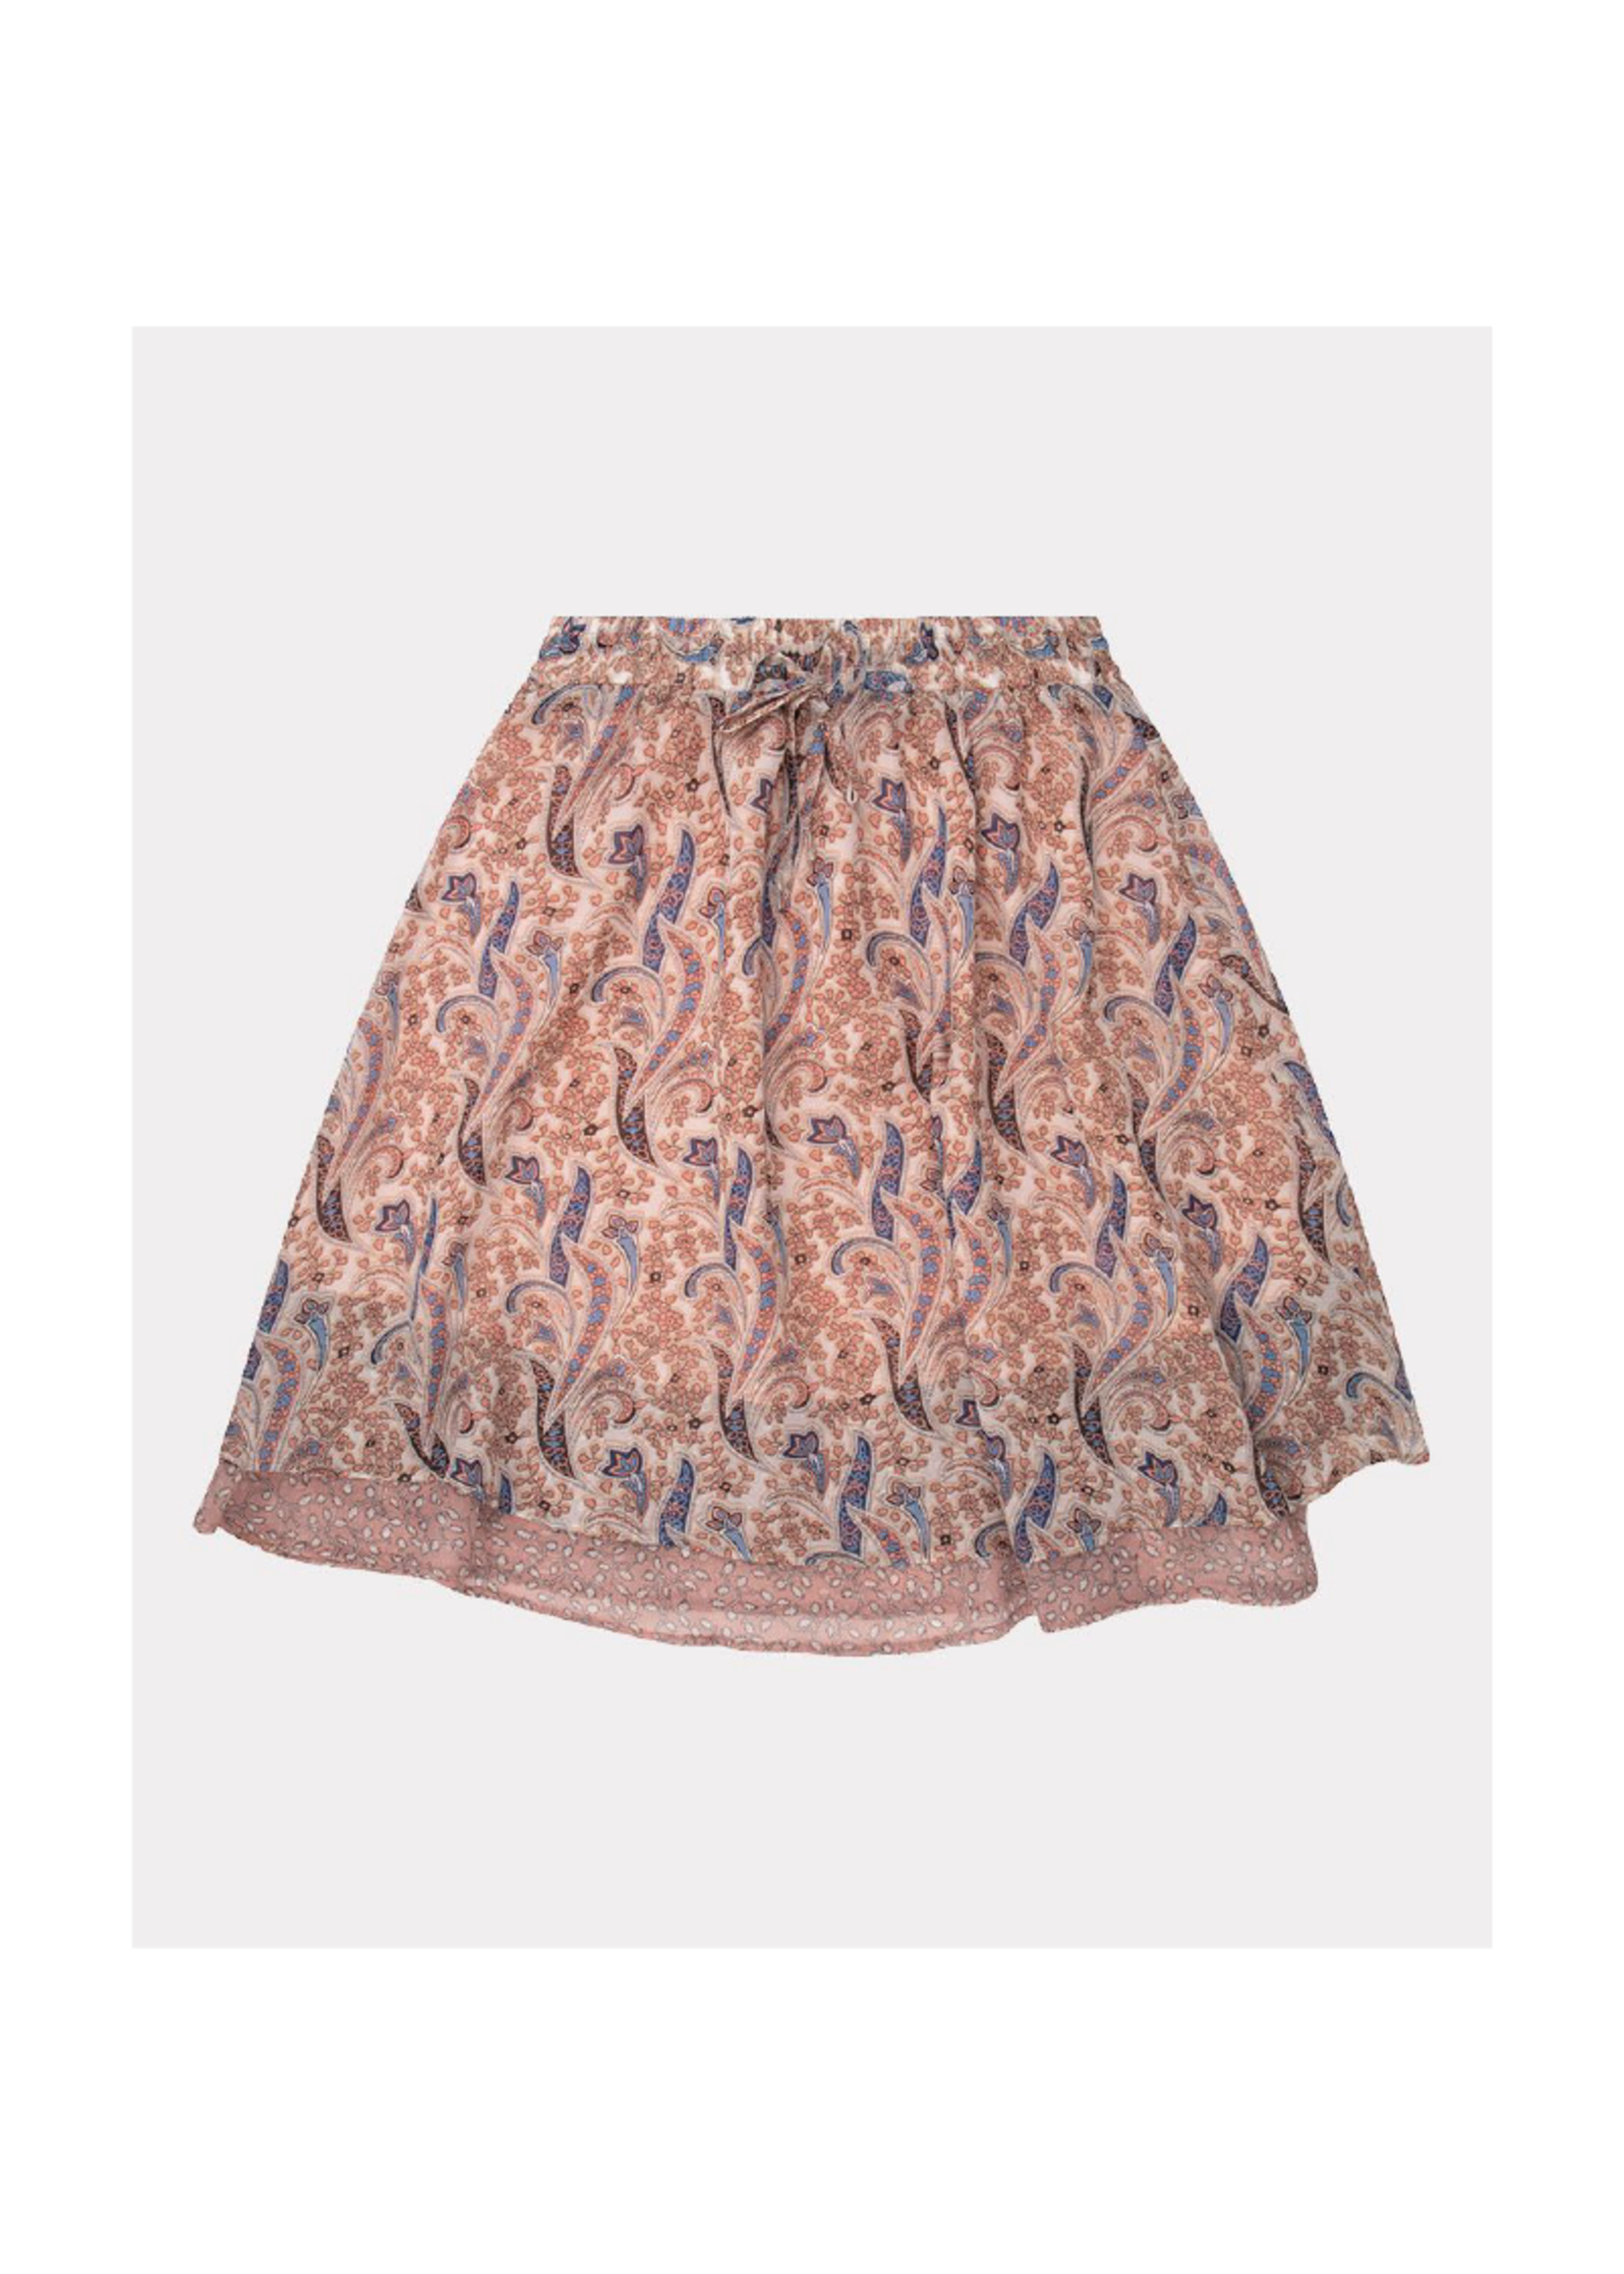 Esqualo Short Layered Paisley Skirt